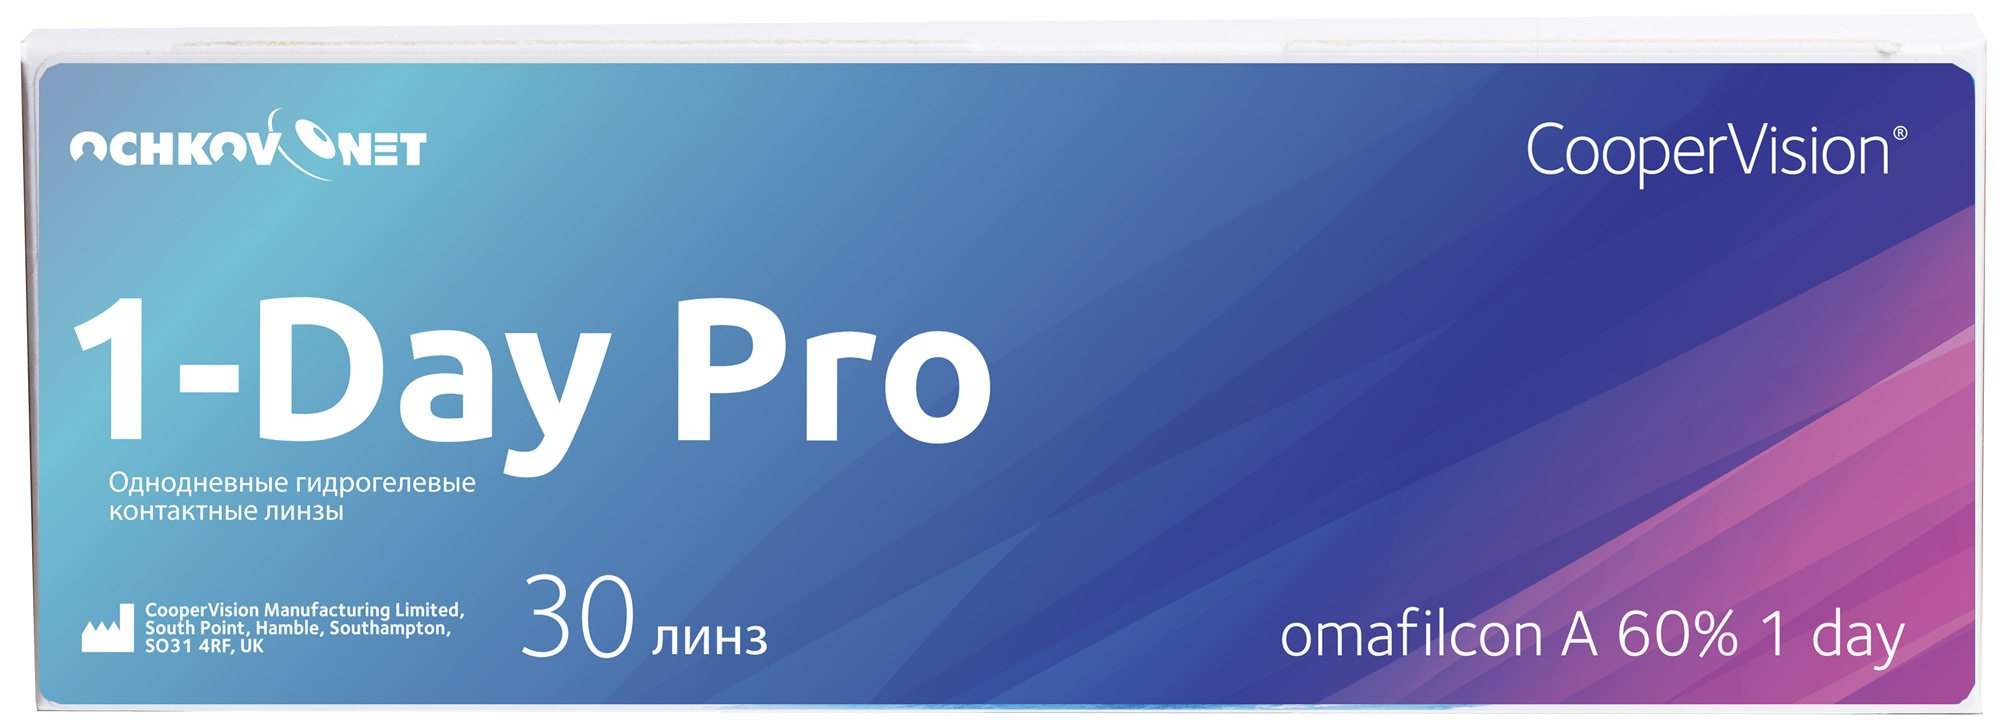 Контактные линзы Ochkov.Net 1-Day Pro 30 линз 8.7, -4.5